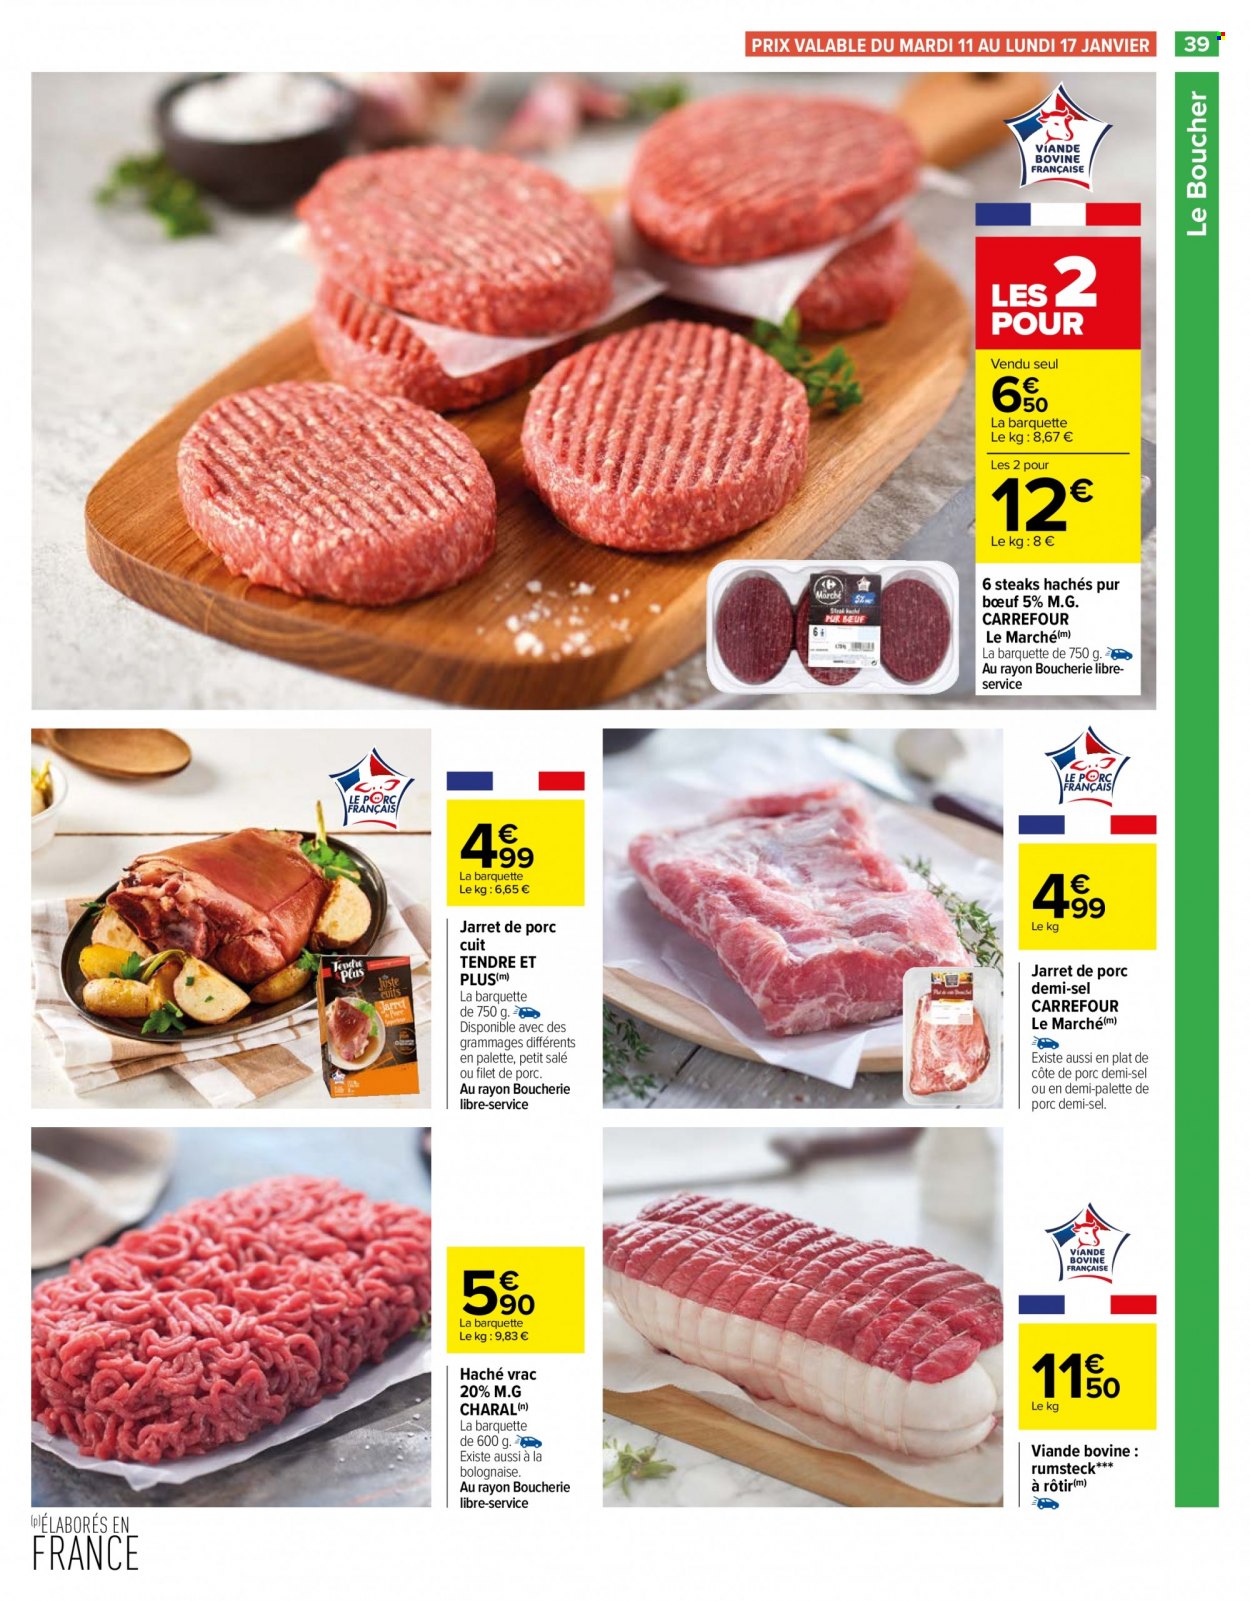 thumbnail - Catalogue Carrefour Hypermarchés - 11/01/2022 - 24/01/2022 - Produits soldés - côtes de porc, viande de porc, palette de porc, steak haché, viande hachée, haché vrac. Page 39.